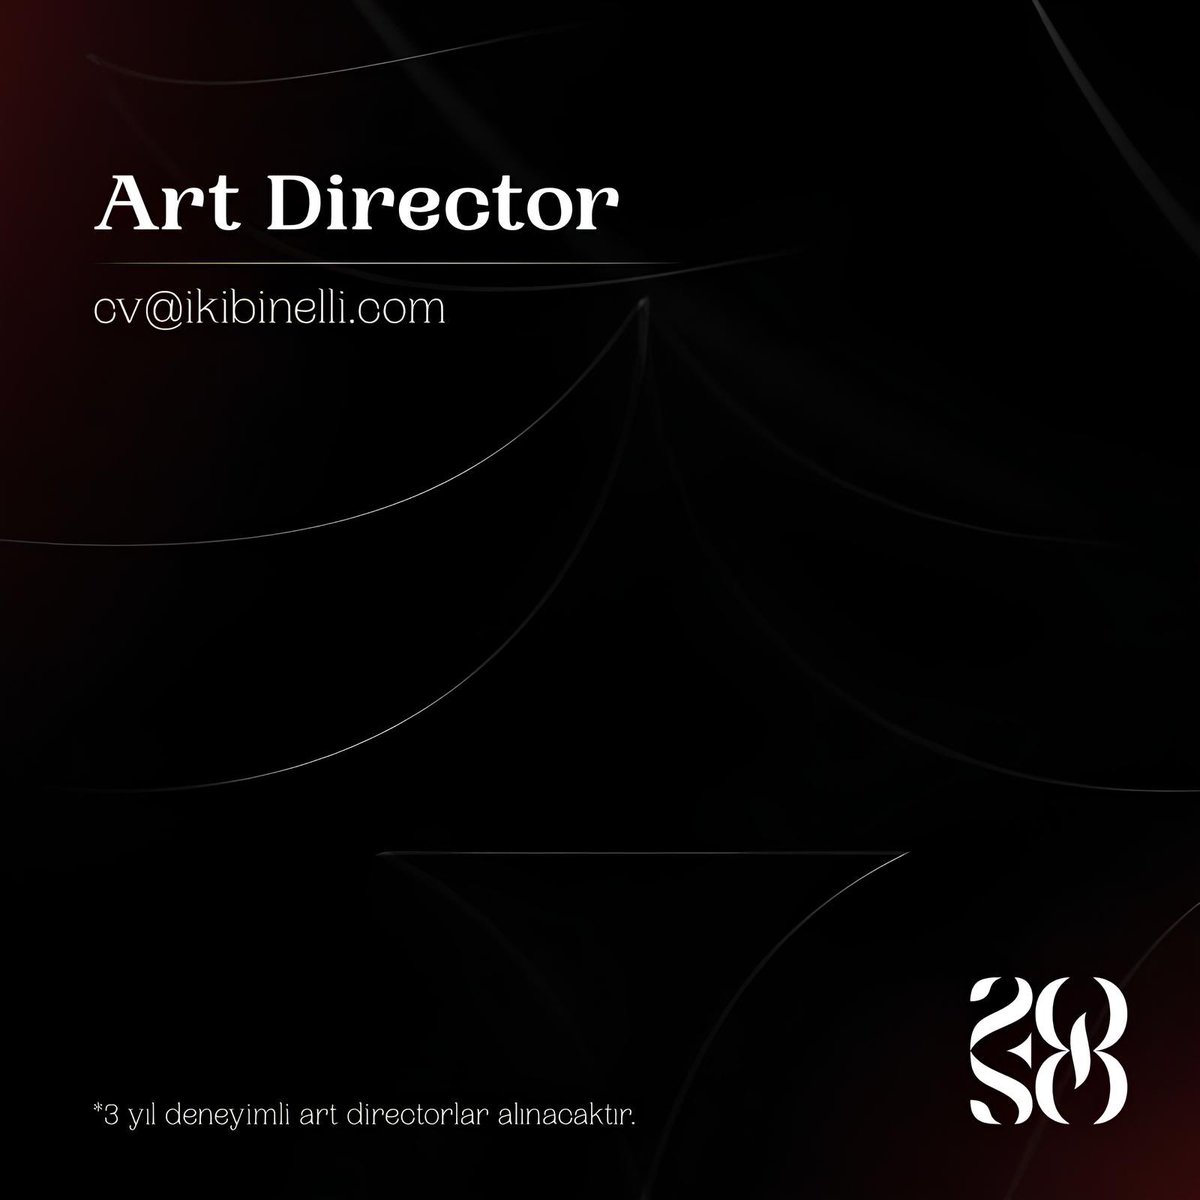 Art Director Aranıyor - 2050 Agency👇

3 yıl deneyimli art director takım arkadaşları arıyoruz.

📩 cv@ikibinelli.com adresine cv ve portfolyolarınızı gönderebilirsiniz.👈

#artdirector #ajansgiller #tasarımcı #grafiktasarım #reklamajansı